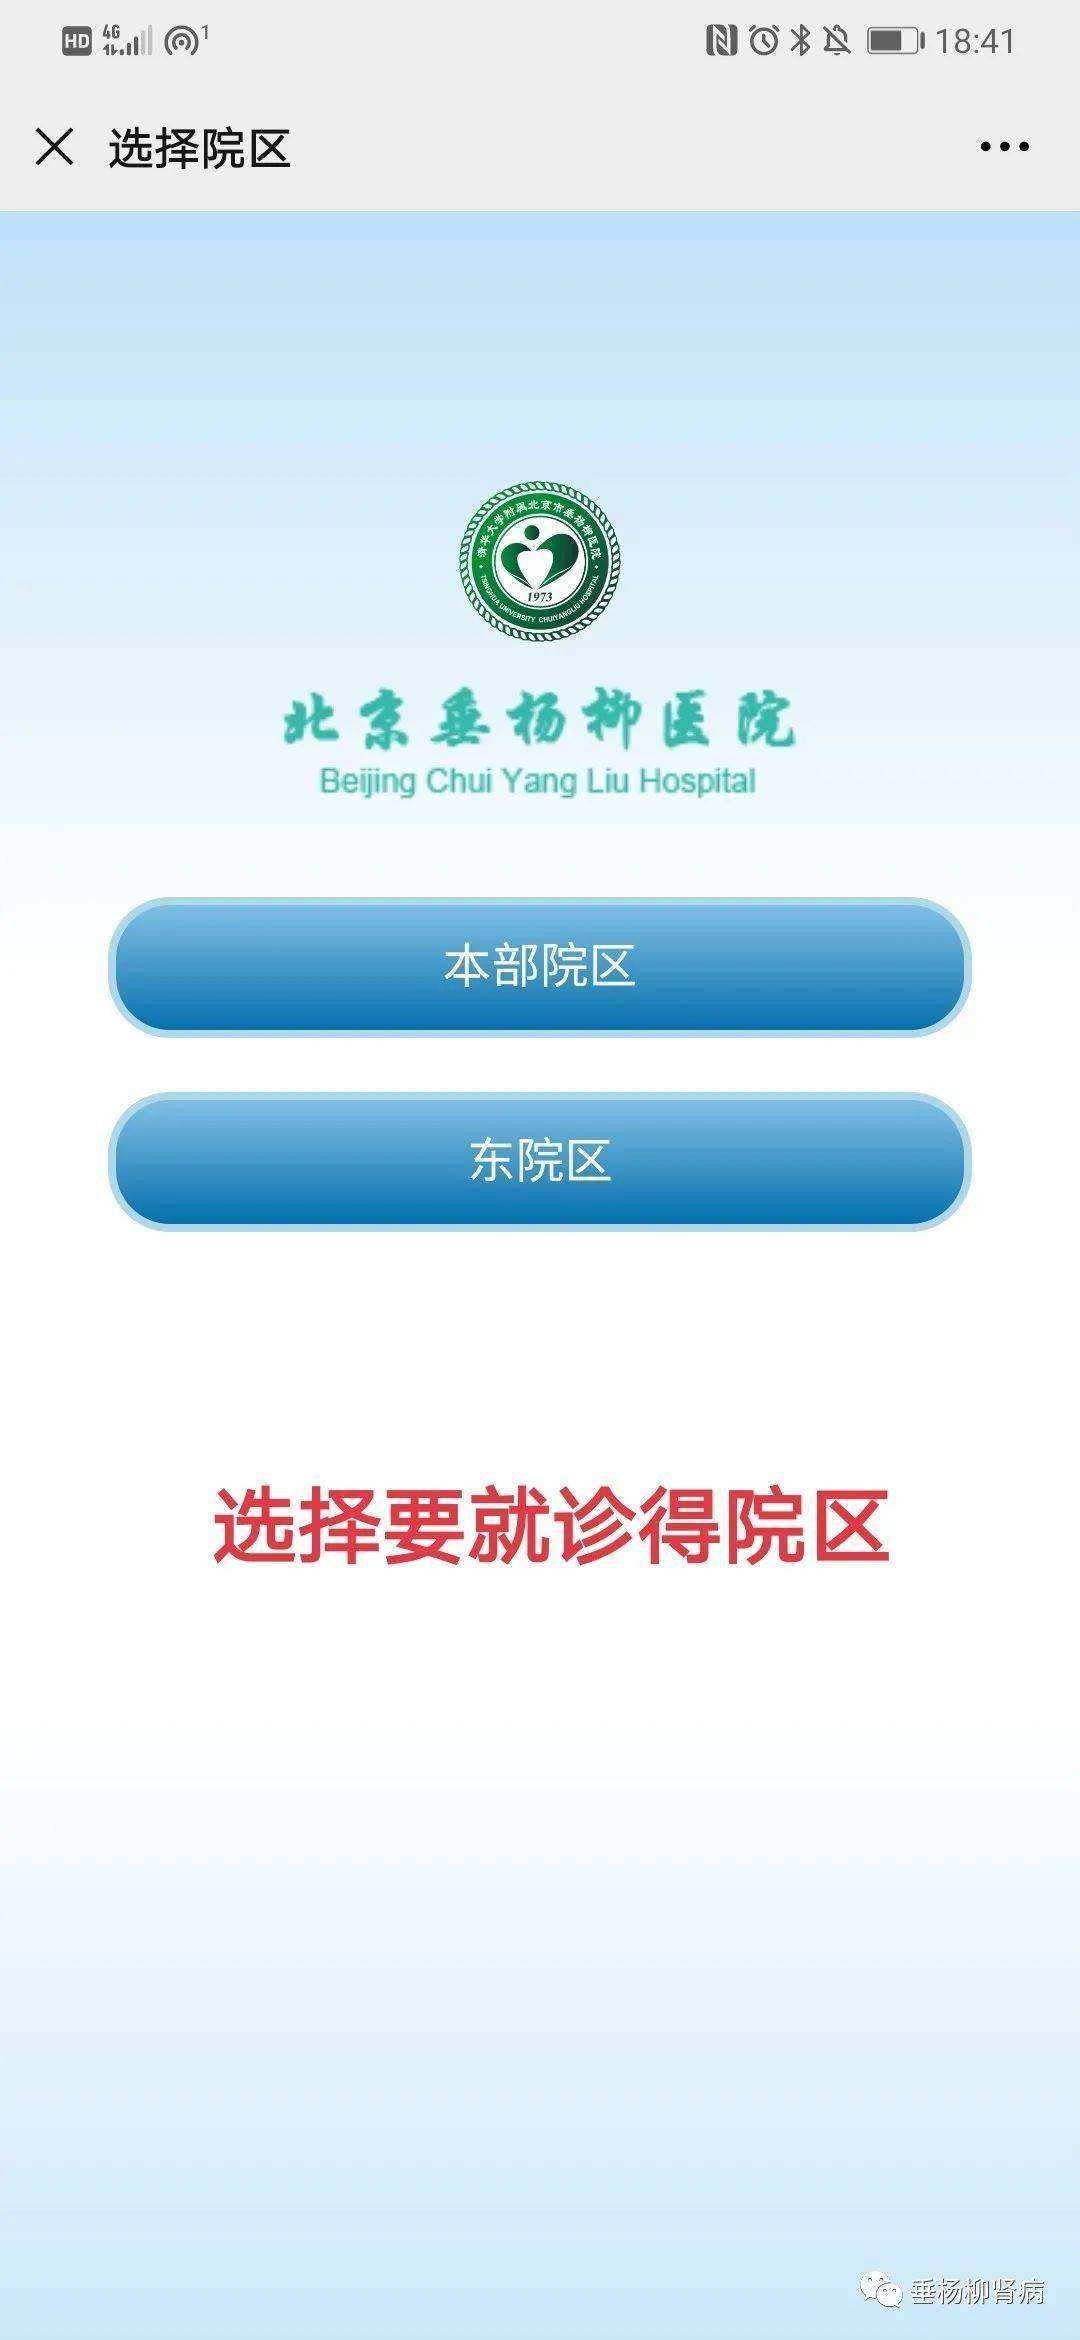 北京胸科医院号贩子办提前办理挂号住院联系方式服务周到的简单介绍